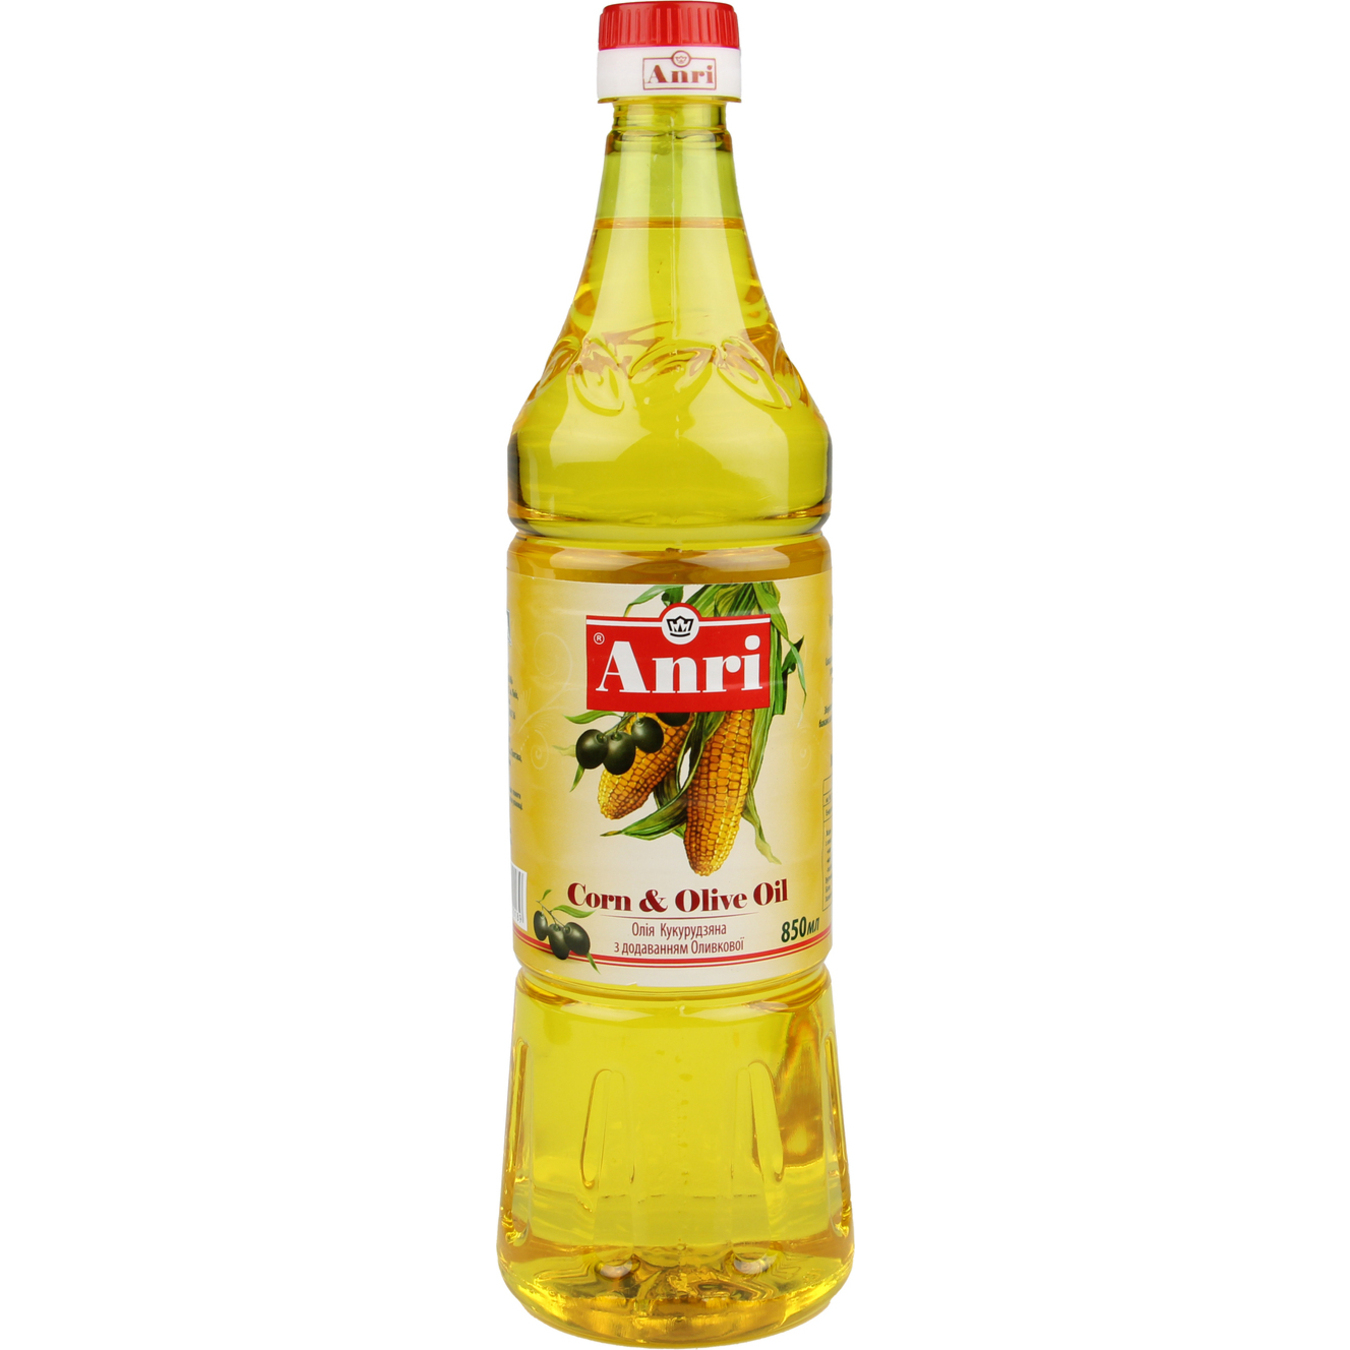 ANRI Blended Corn & Olive Oil 850ml